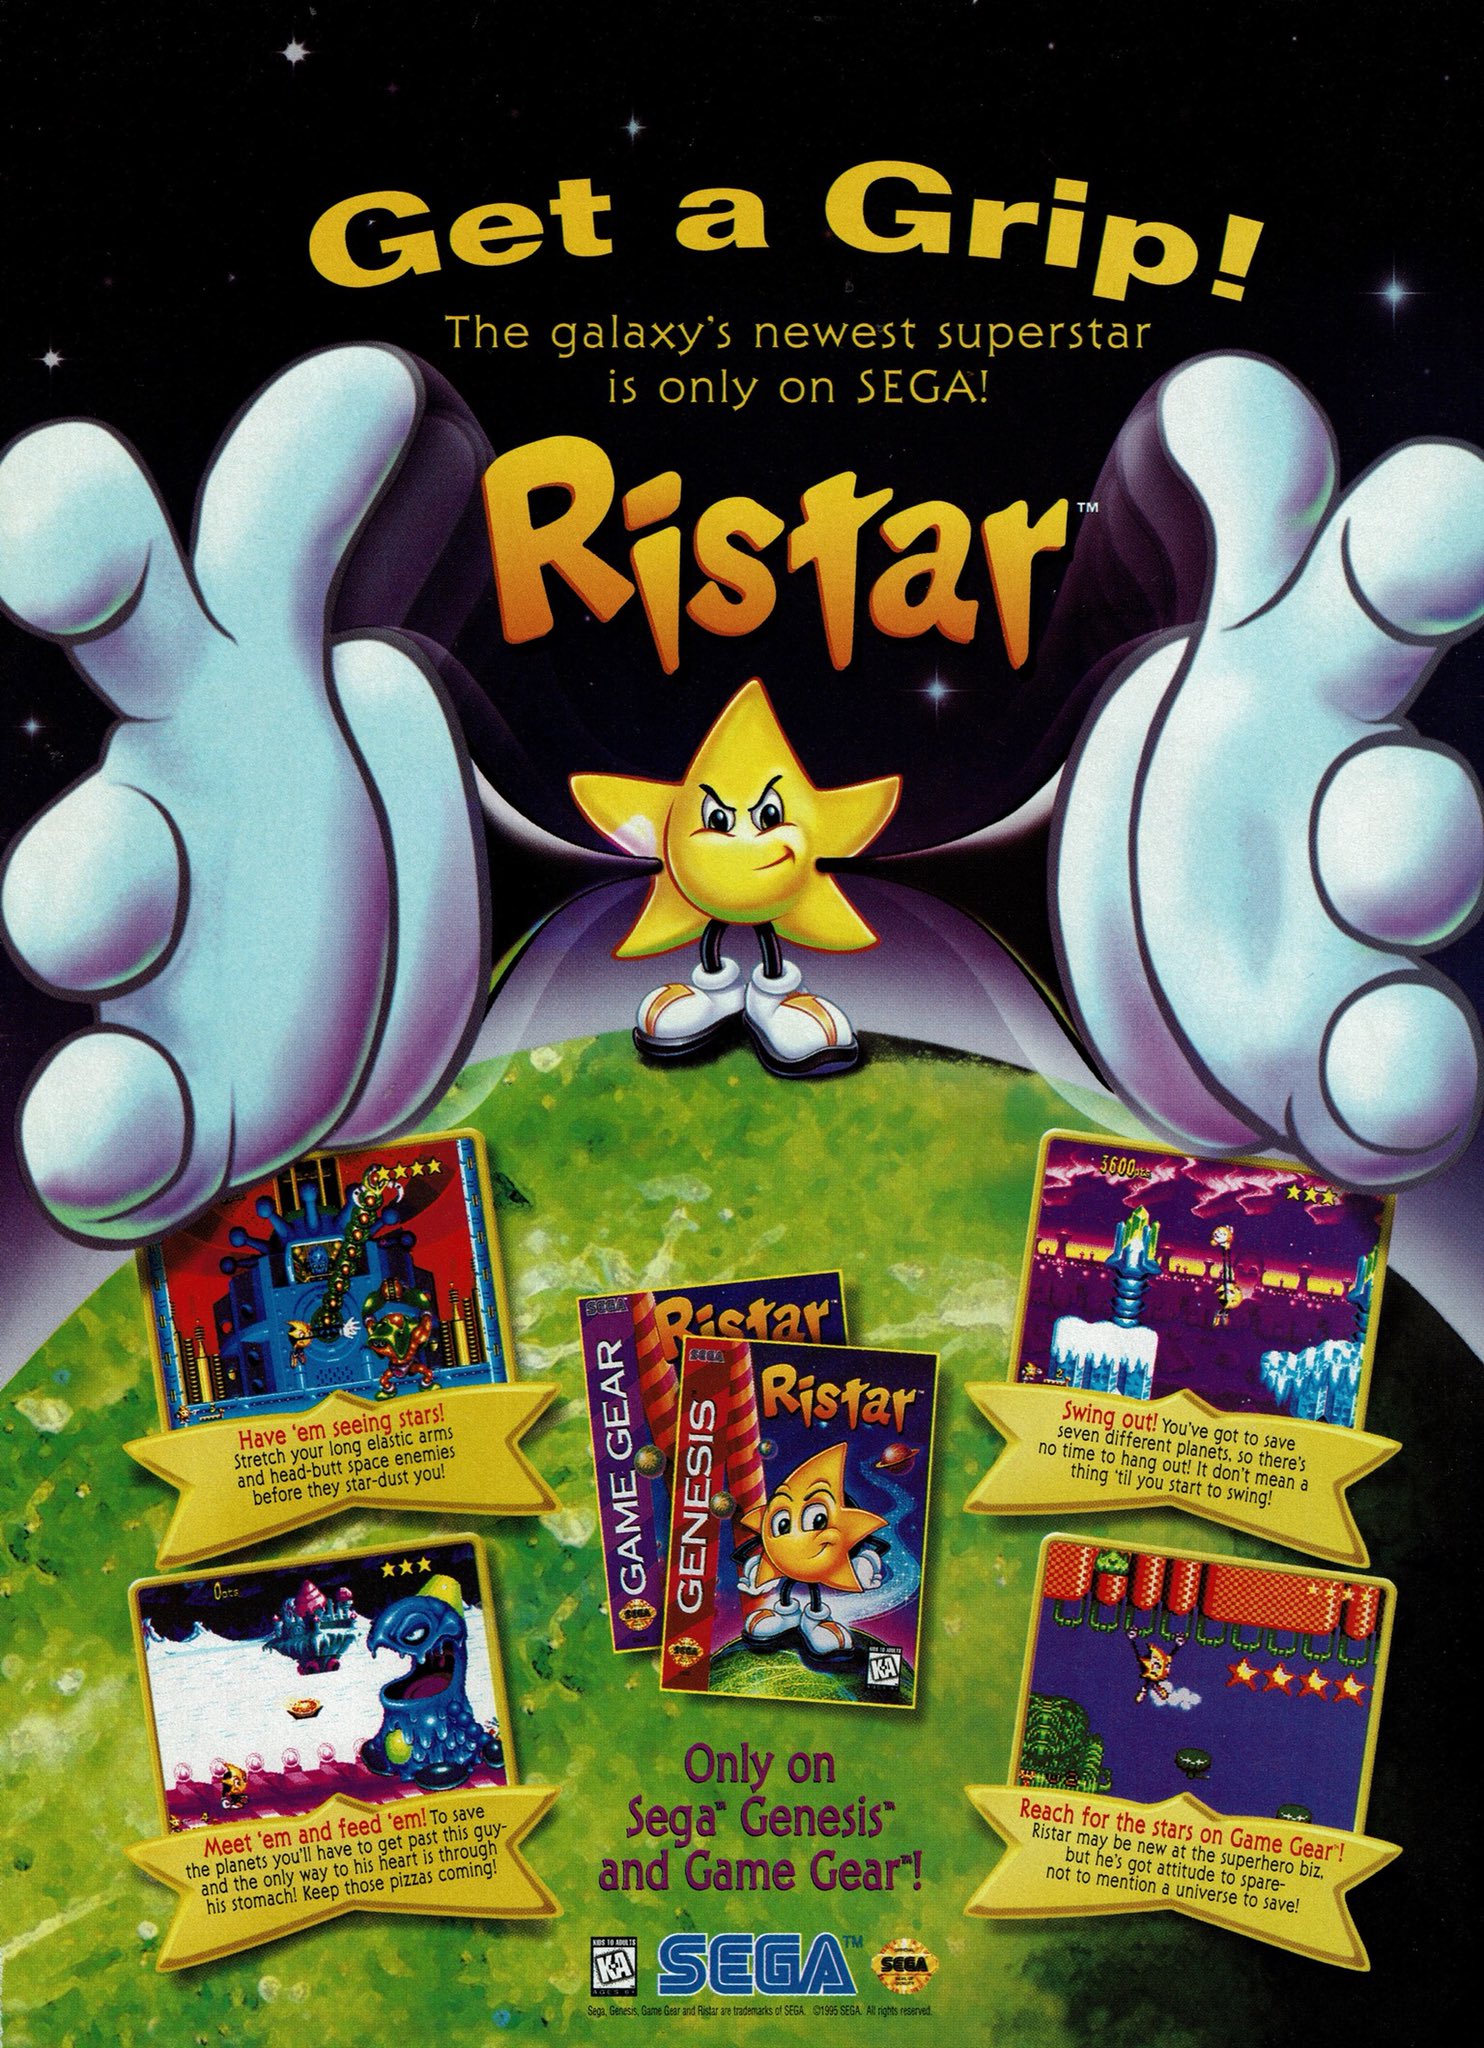 download ristar steam